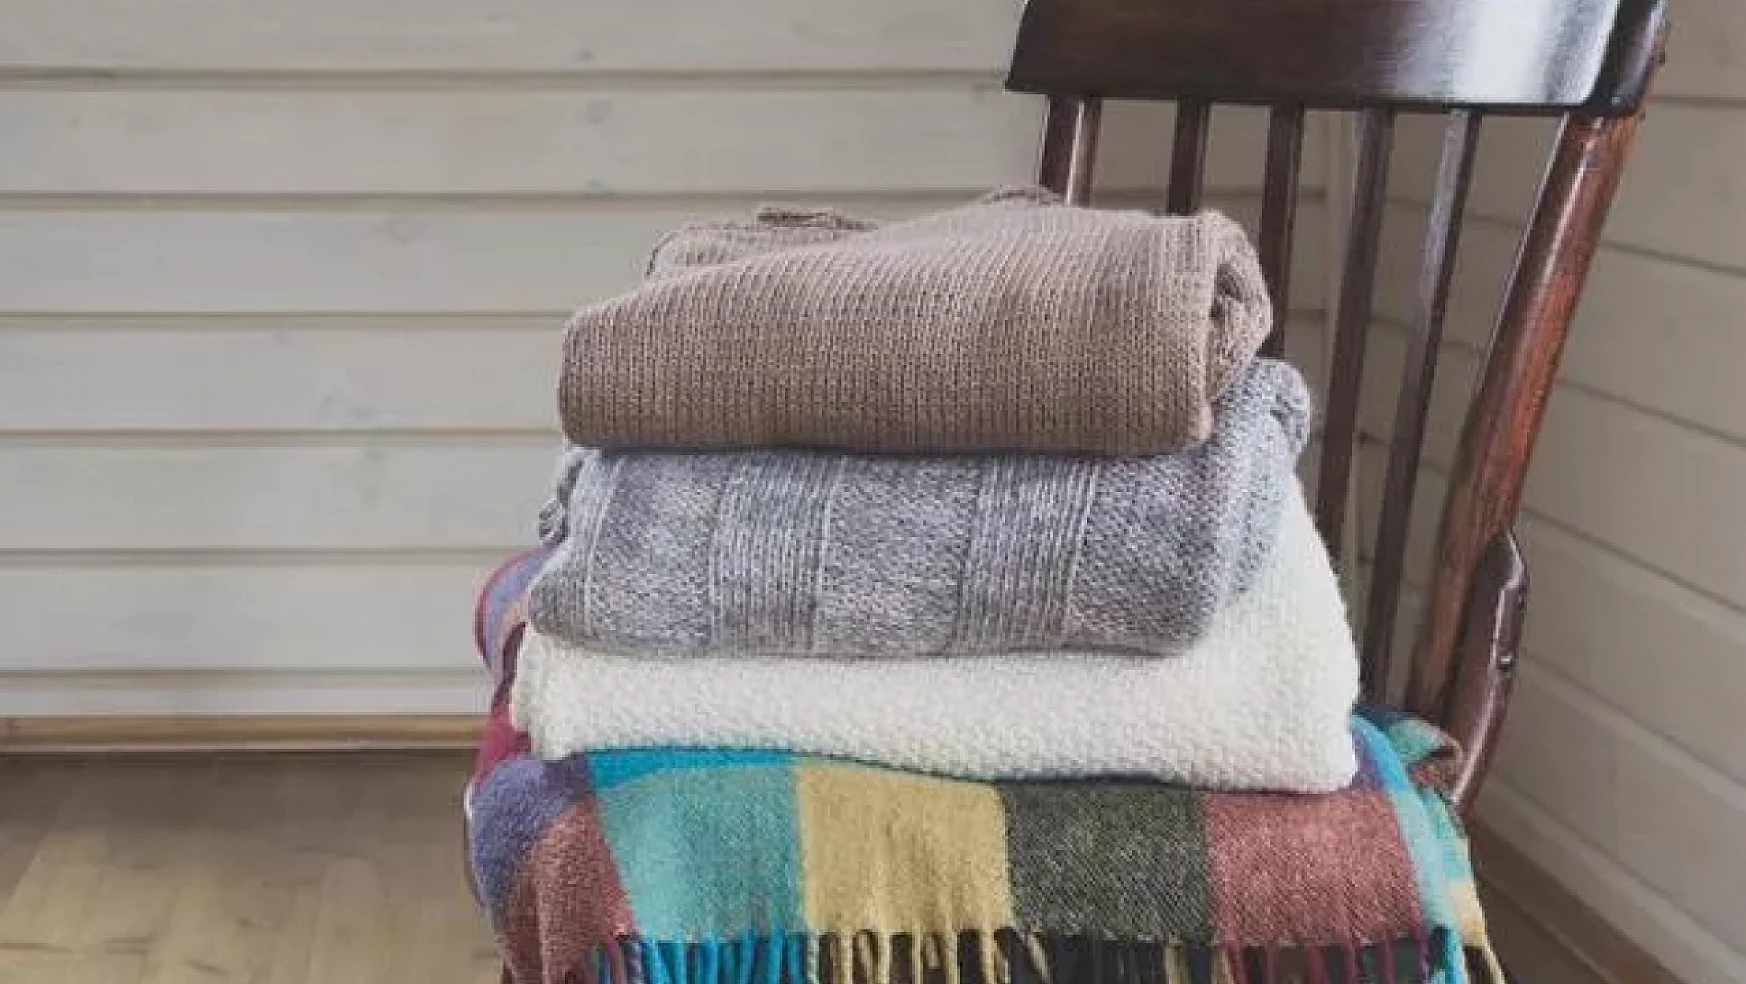 Depremden sonra battaniye fiyatları mı arttı?